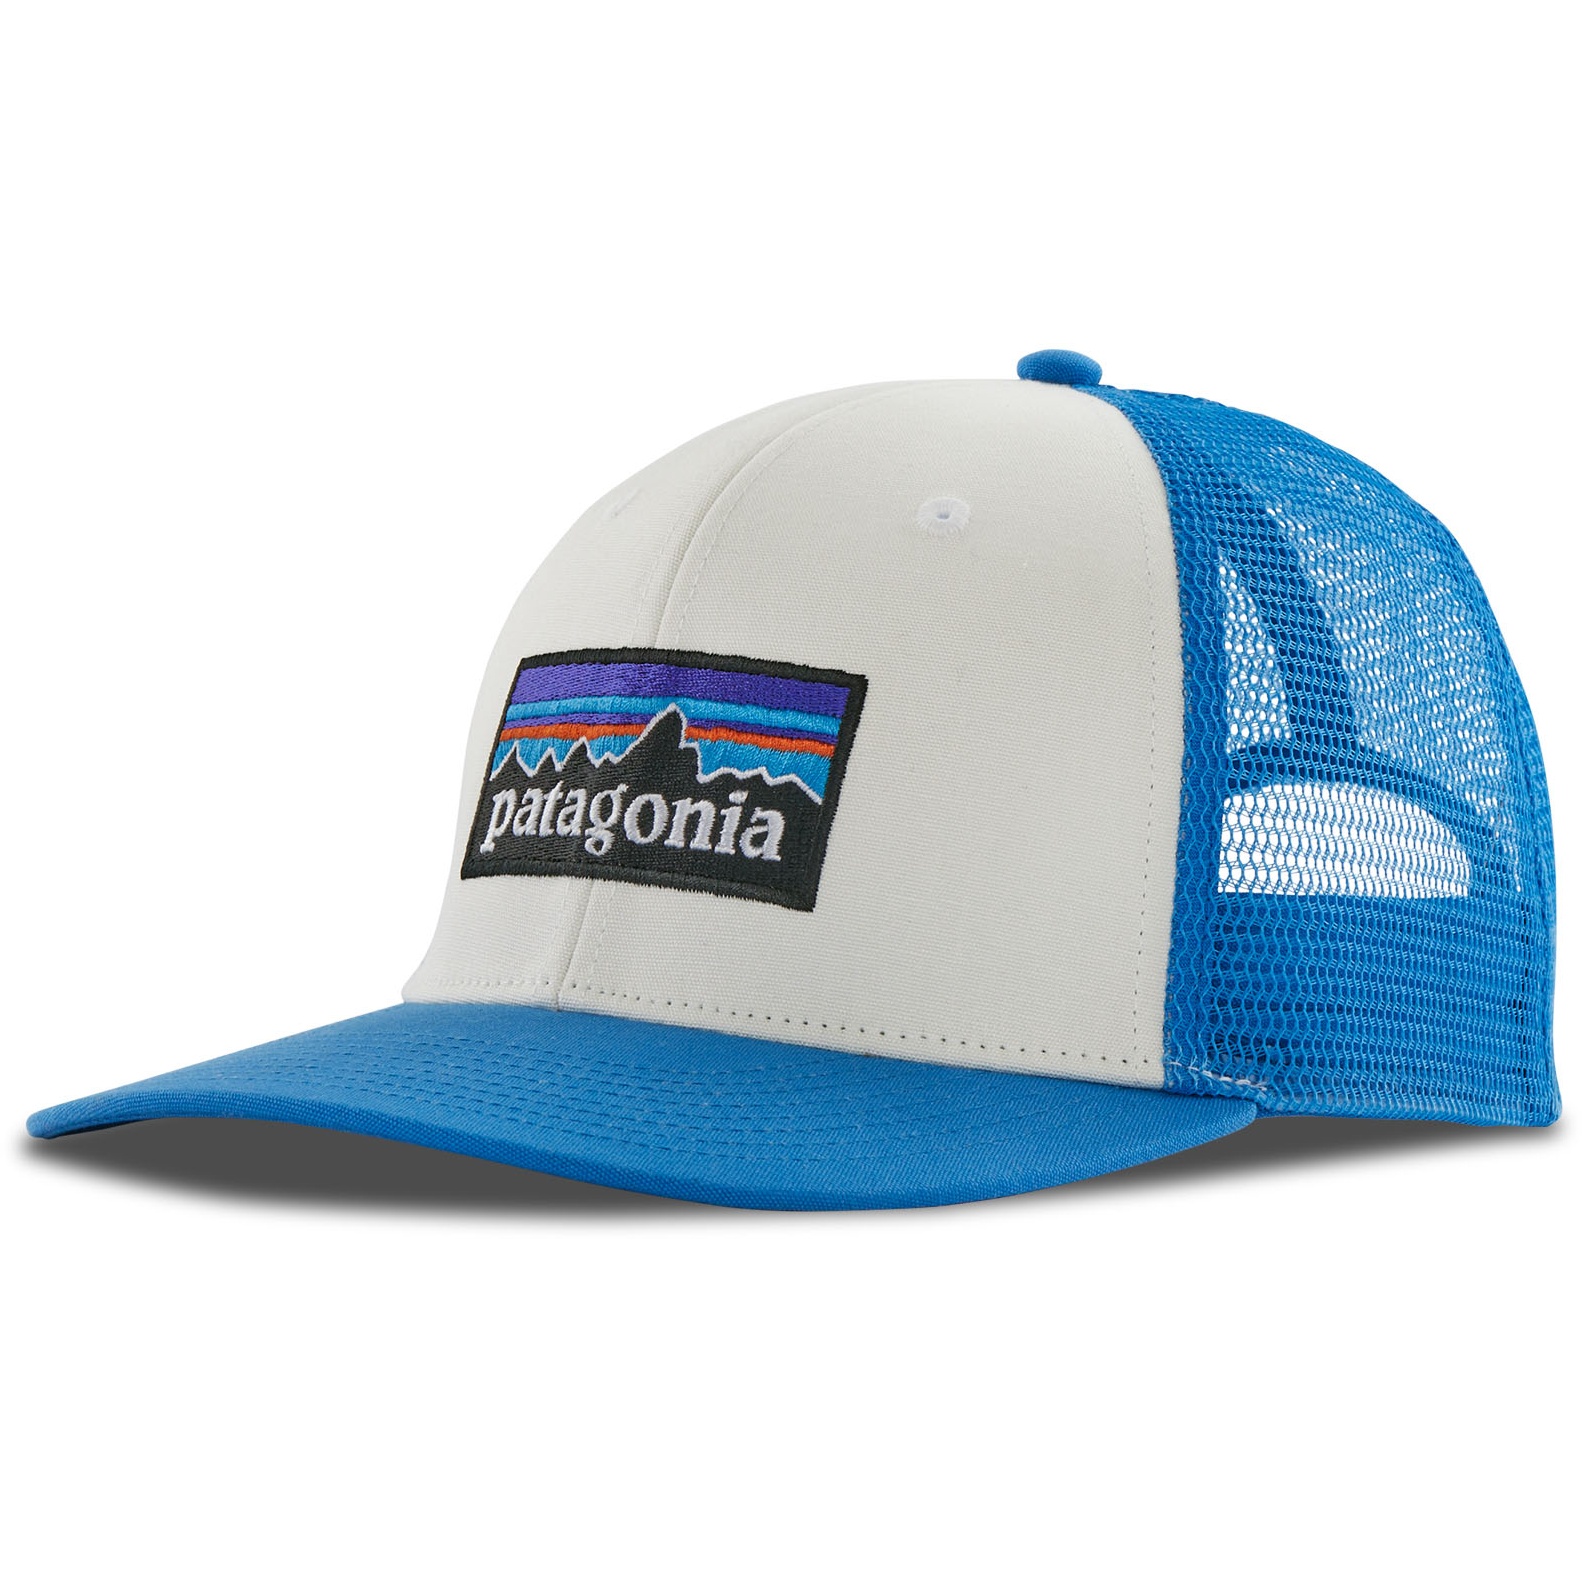 Produktbild von Patagonia P-6 Logo Trucker Cap - White w/Vessel Blue